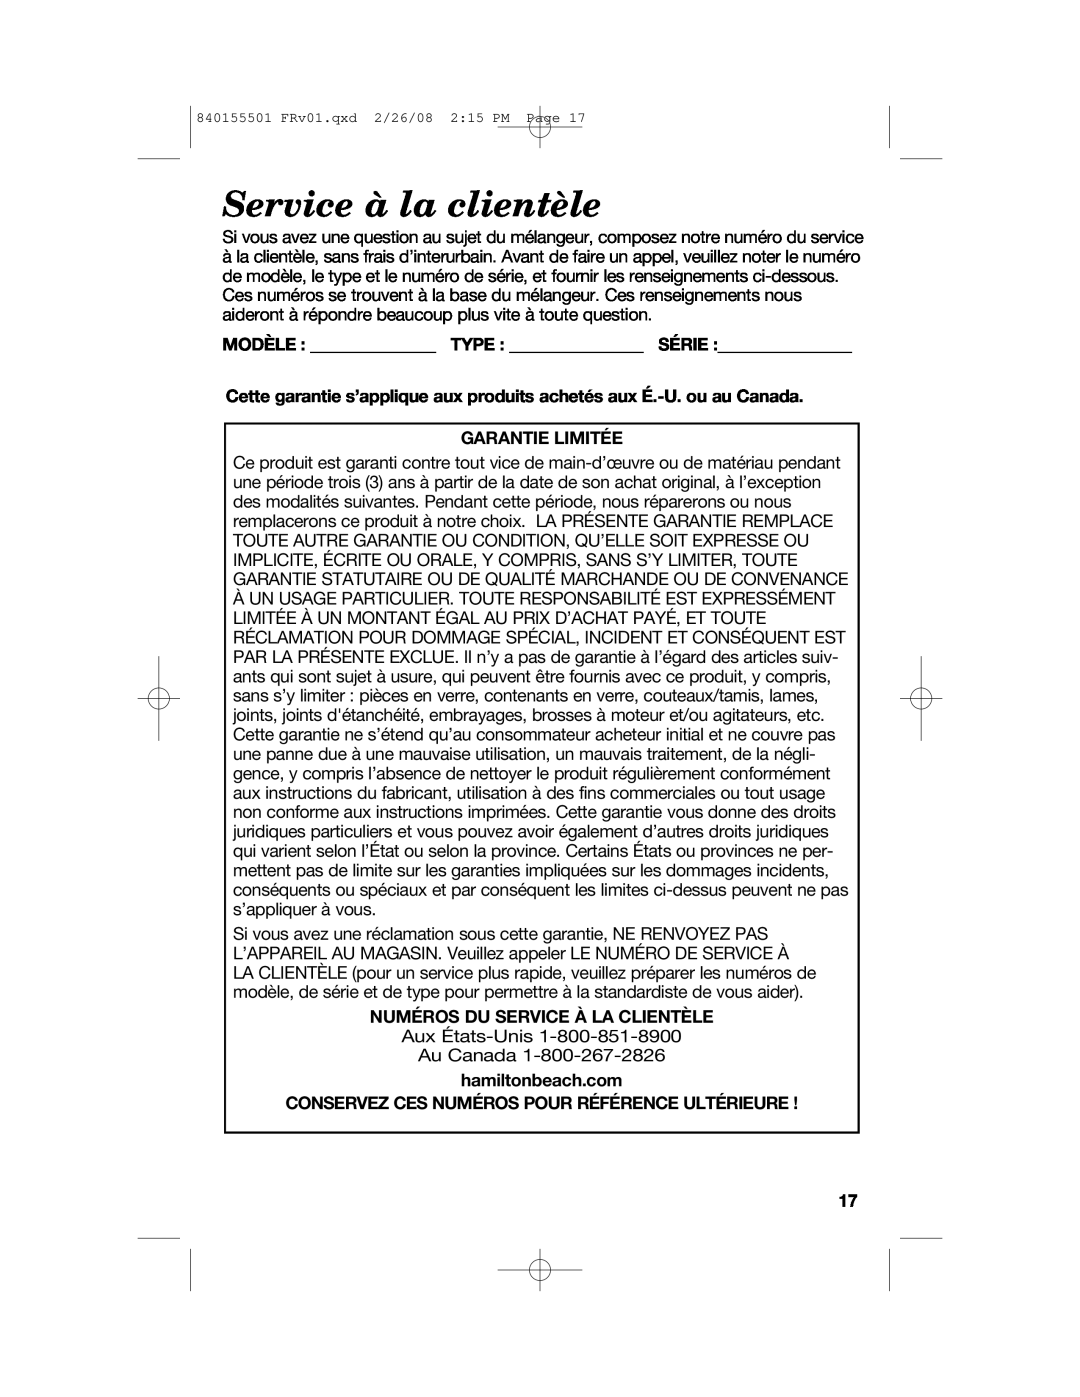 Hamilton Beach 54616C manual Service à la clientèle, Modèle Type Série, Garantie Limitée, Numéros Du Service À La Clientèle 